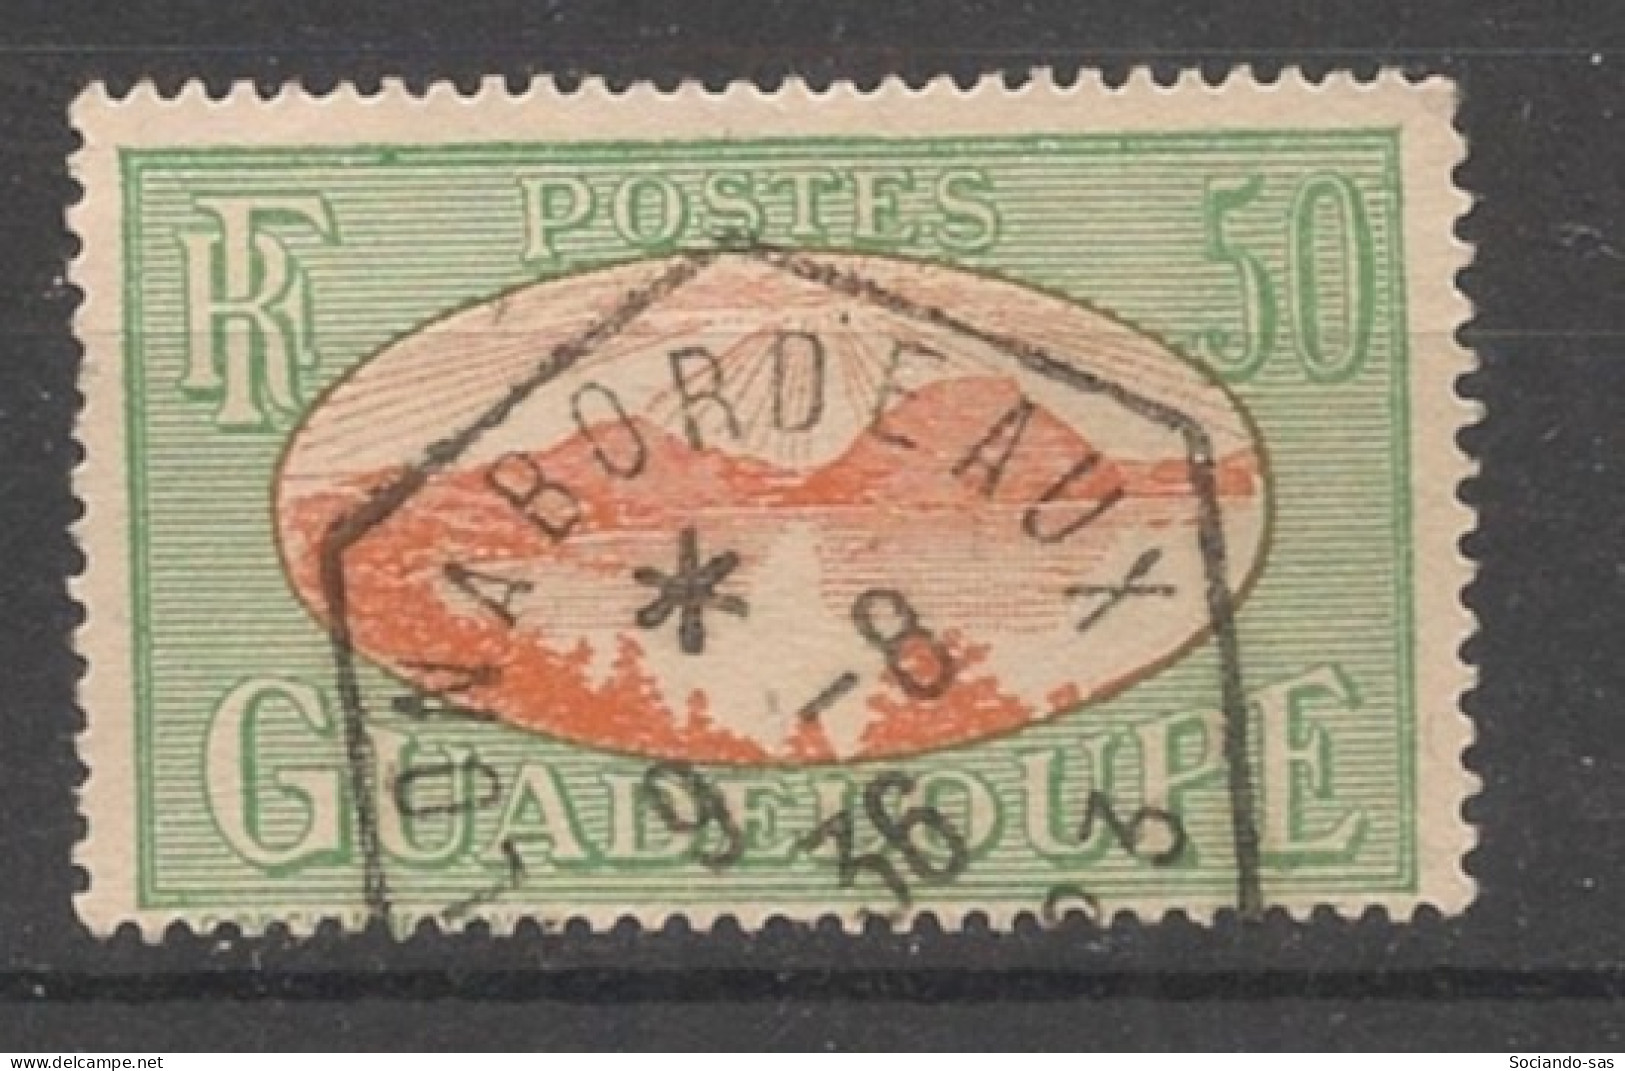 GUADELOUPE - 1928-38 - N°YT. 109 - Rade Des Saintes 50c - Oblitéré "Colon à Bordeaux" / Used - Gebraucht